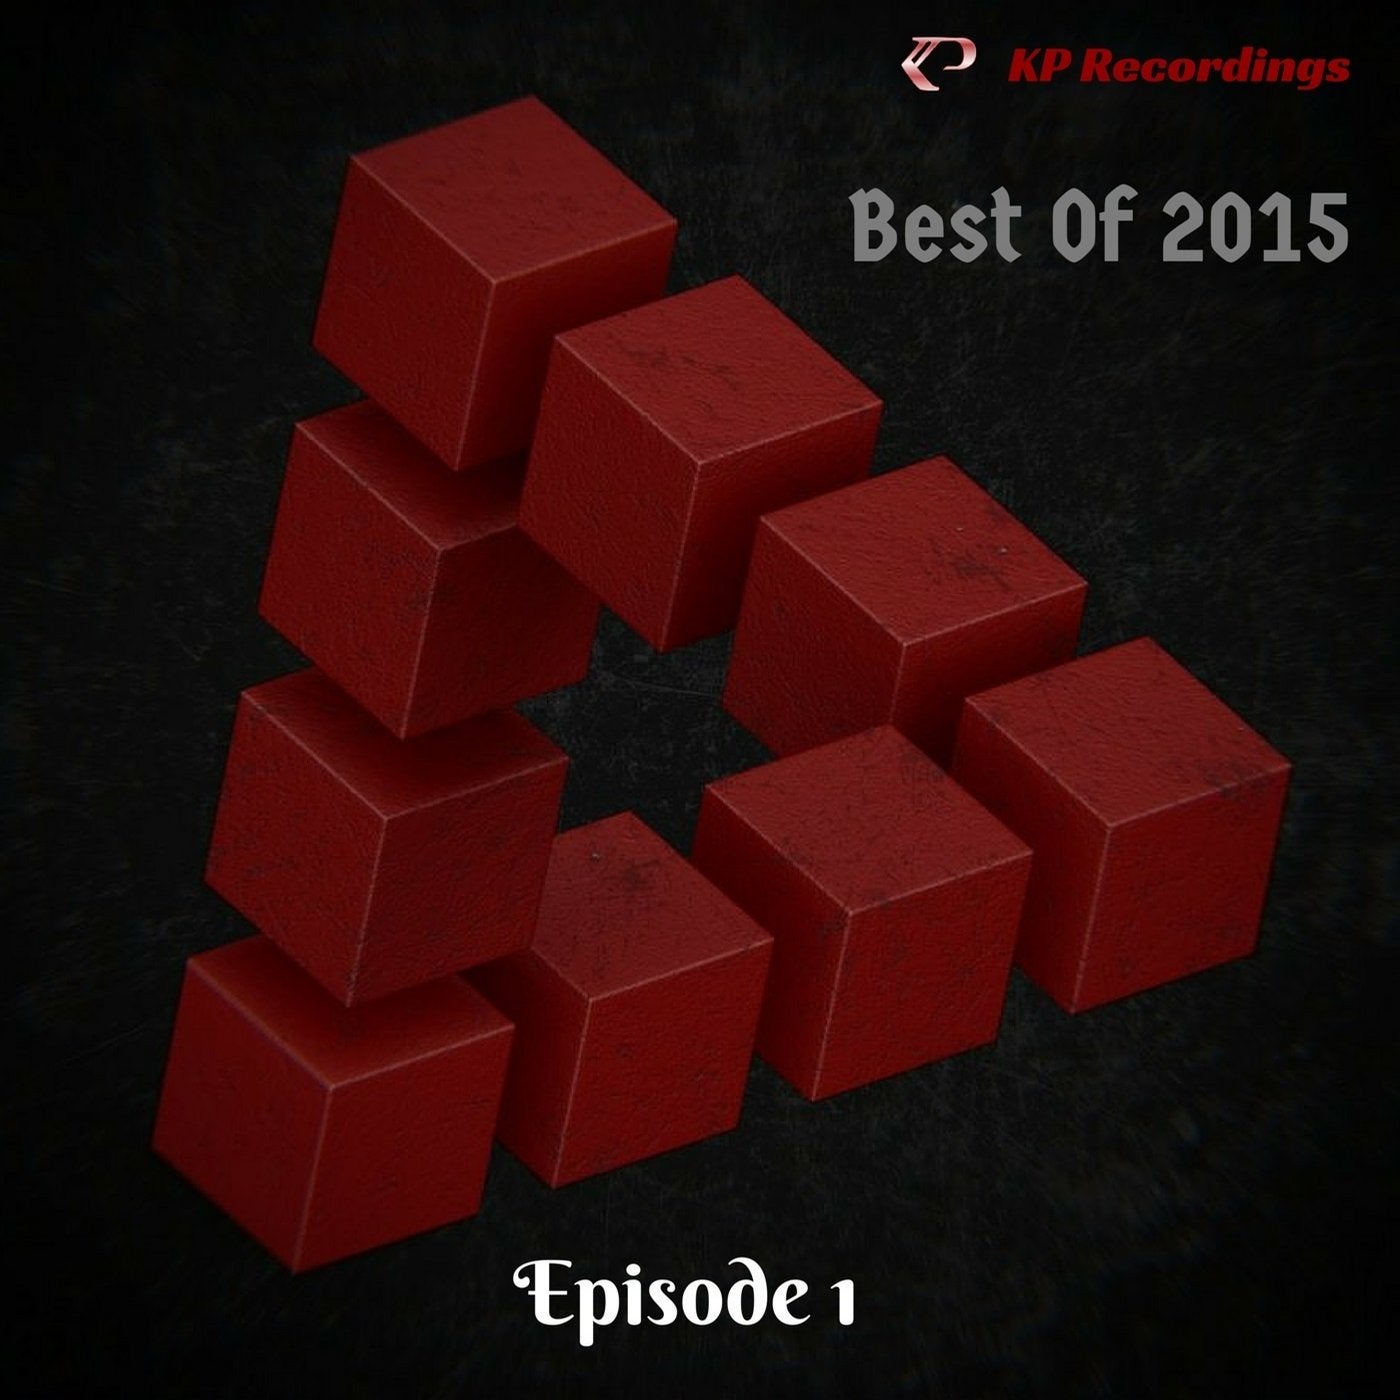 KP Recordings Best of 2015 Episode 1